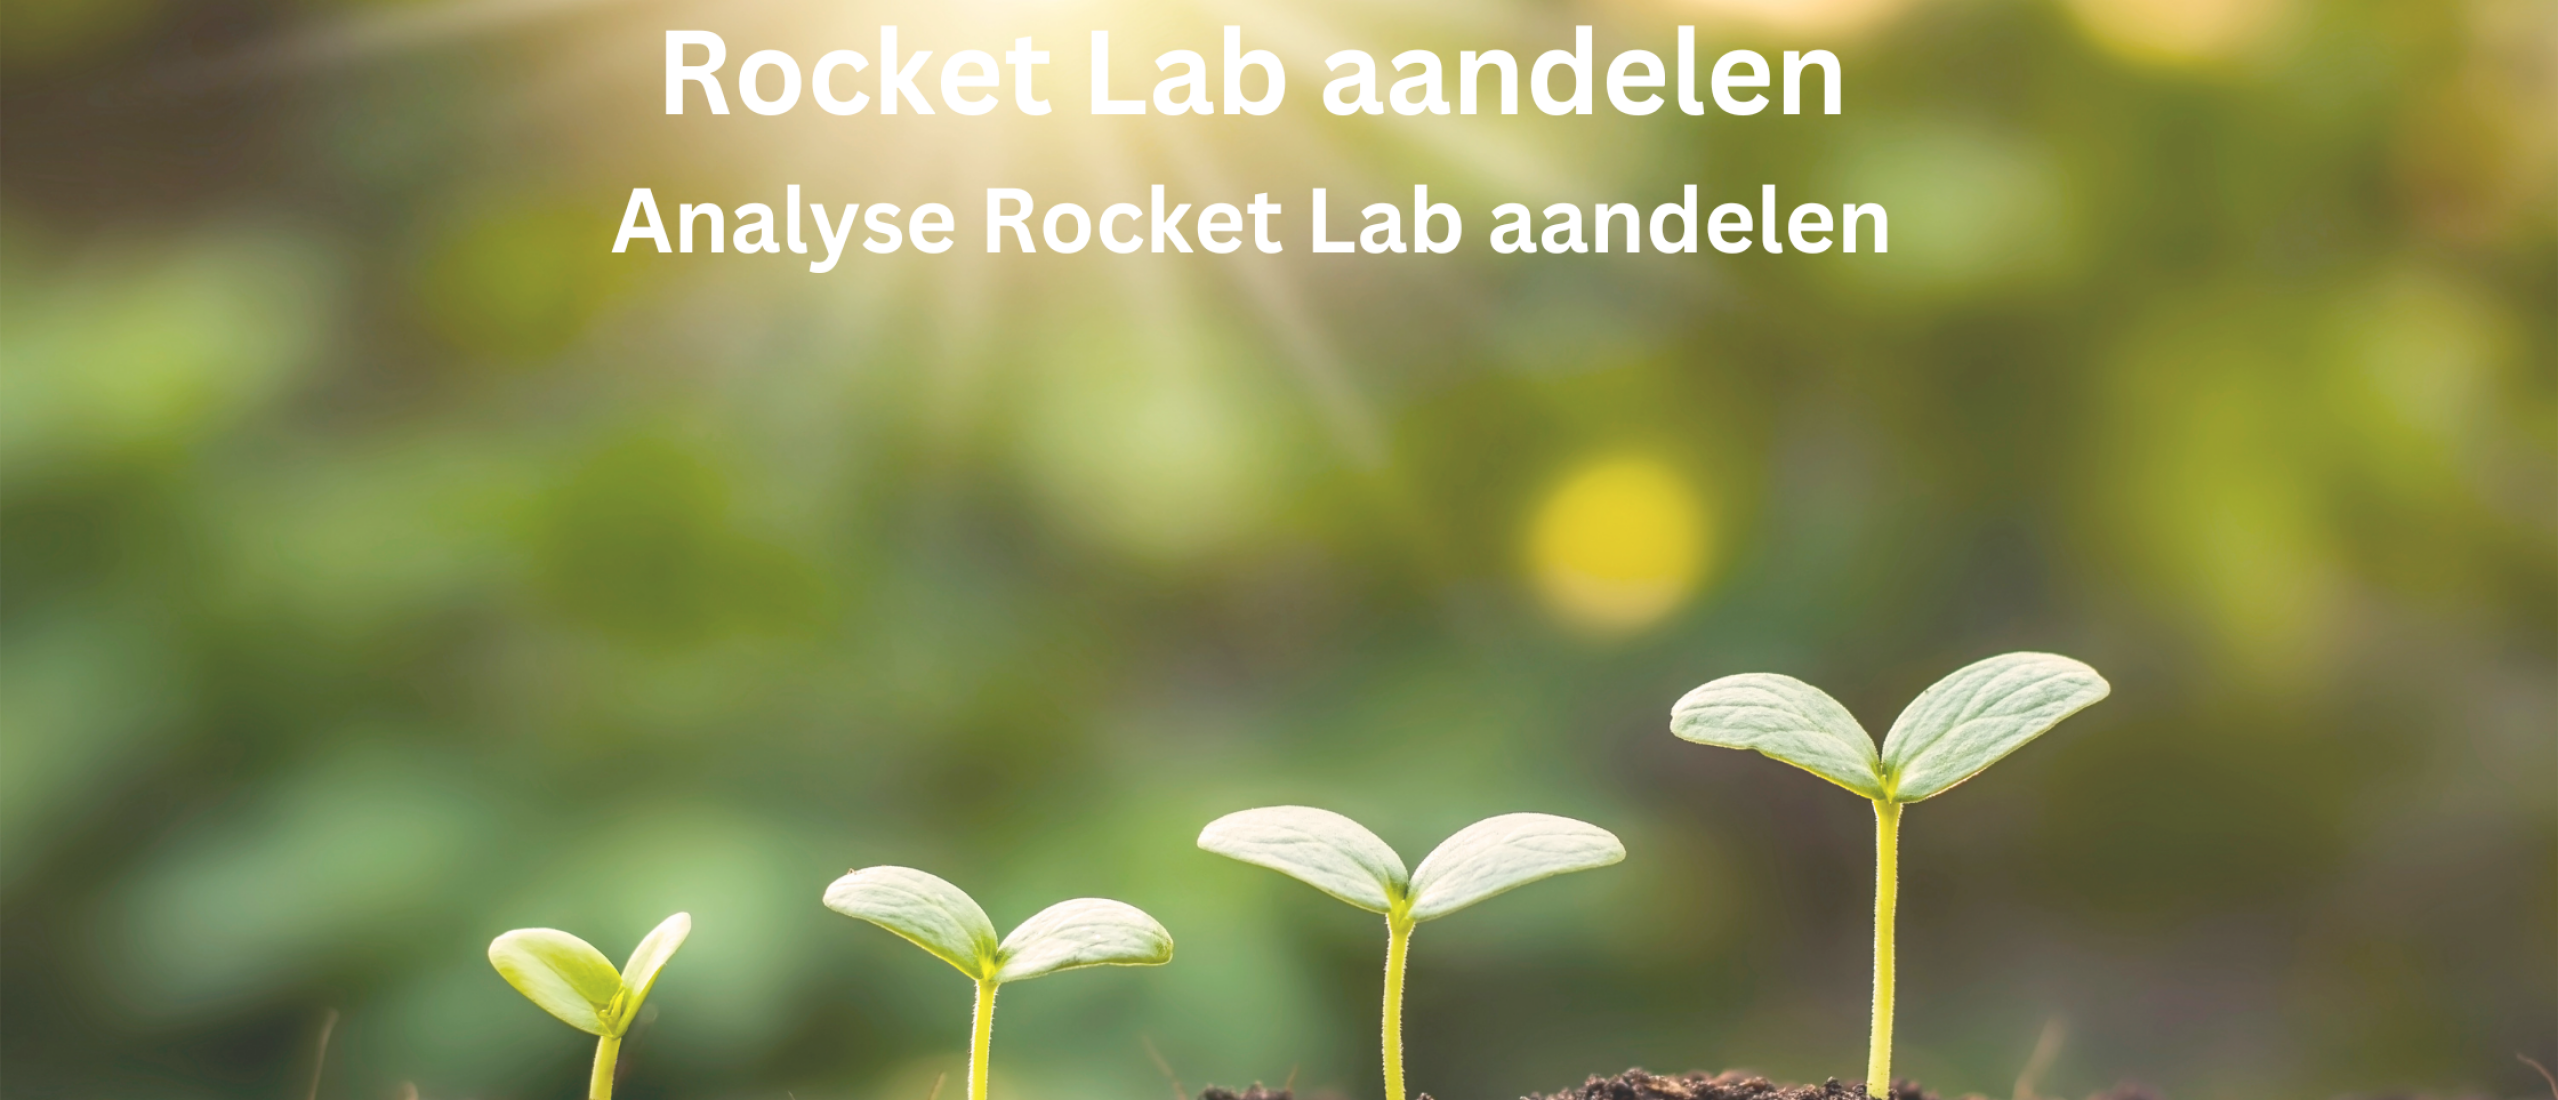 Rocket Lab aandelen kopen of niet? Analyse +82,9% Groei | Happy Investors